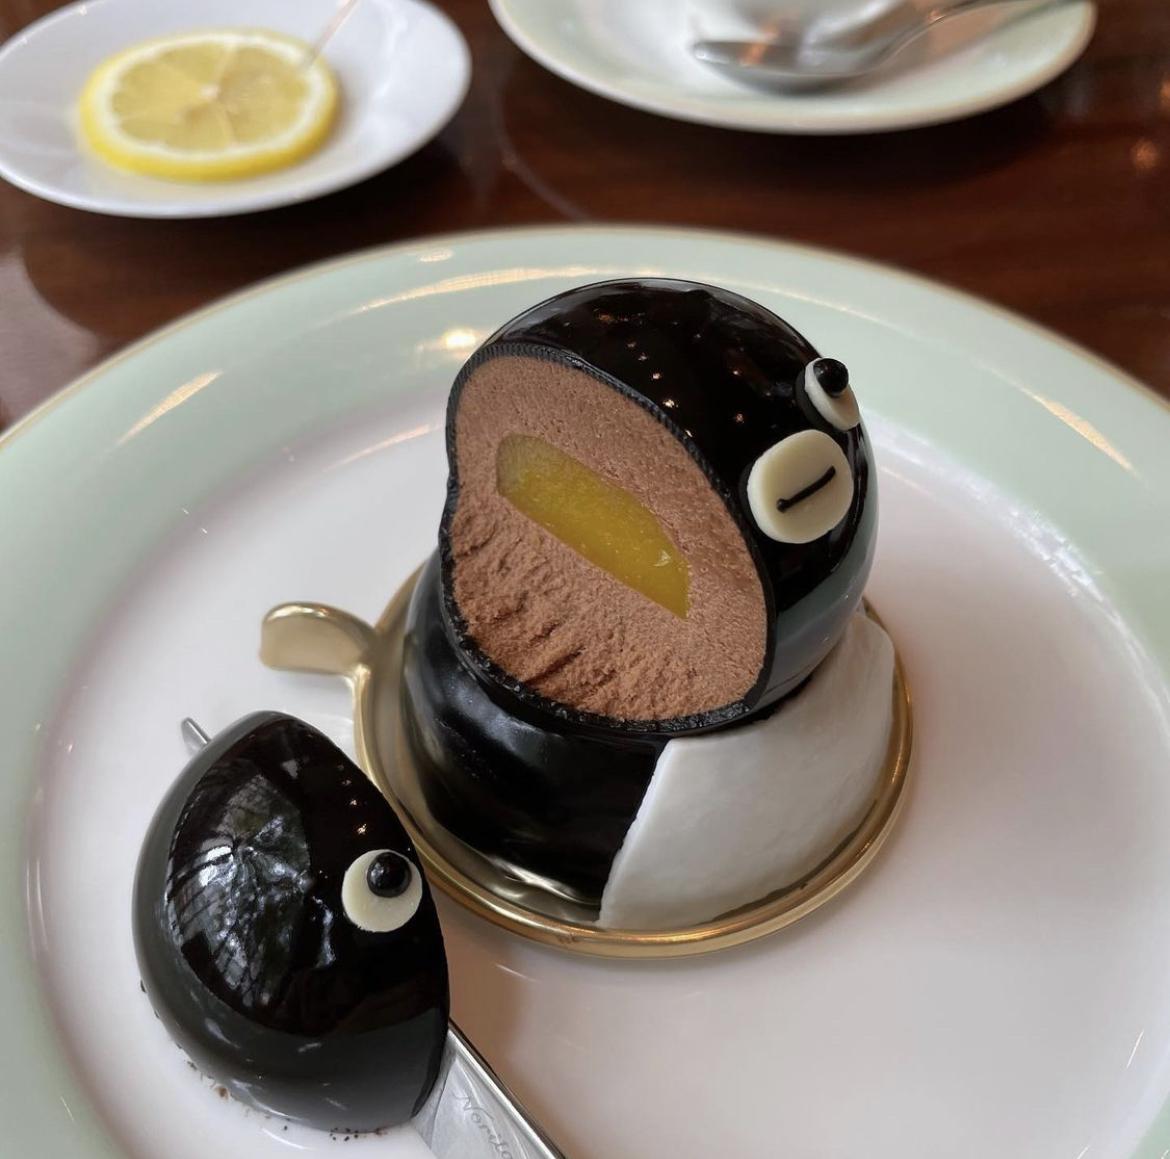 東京池袋 Suicaペンギンのチョコレートケーキをハック ホテルメトロポリタン デパ地下のまおさんが投稿したフォトブック Sharee